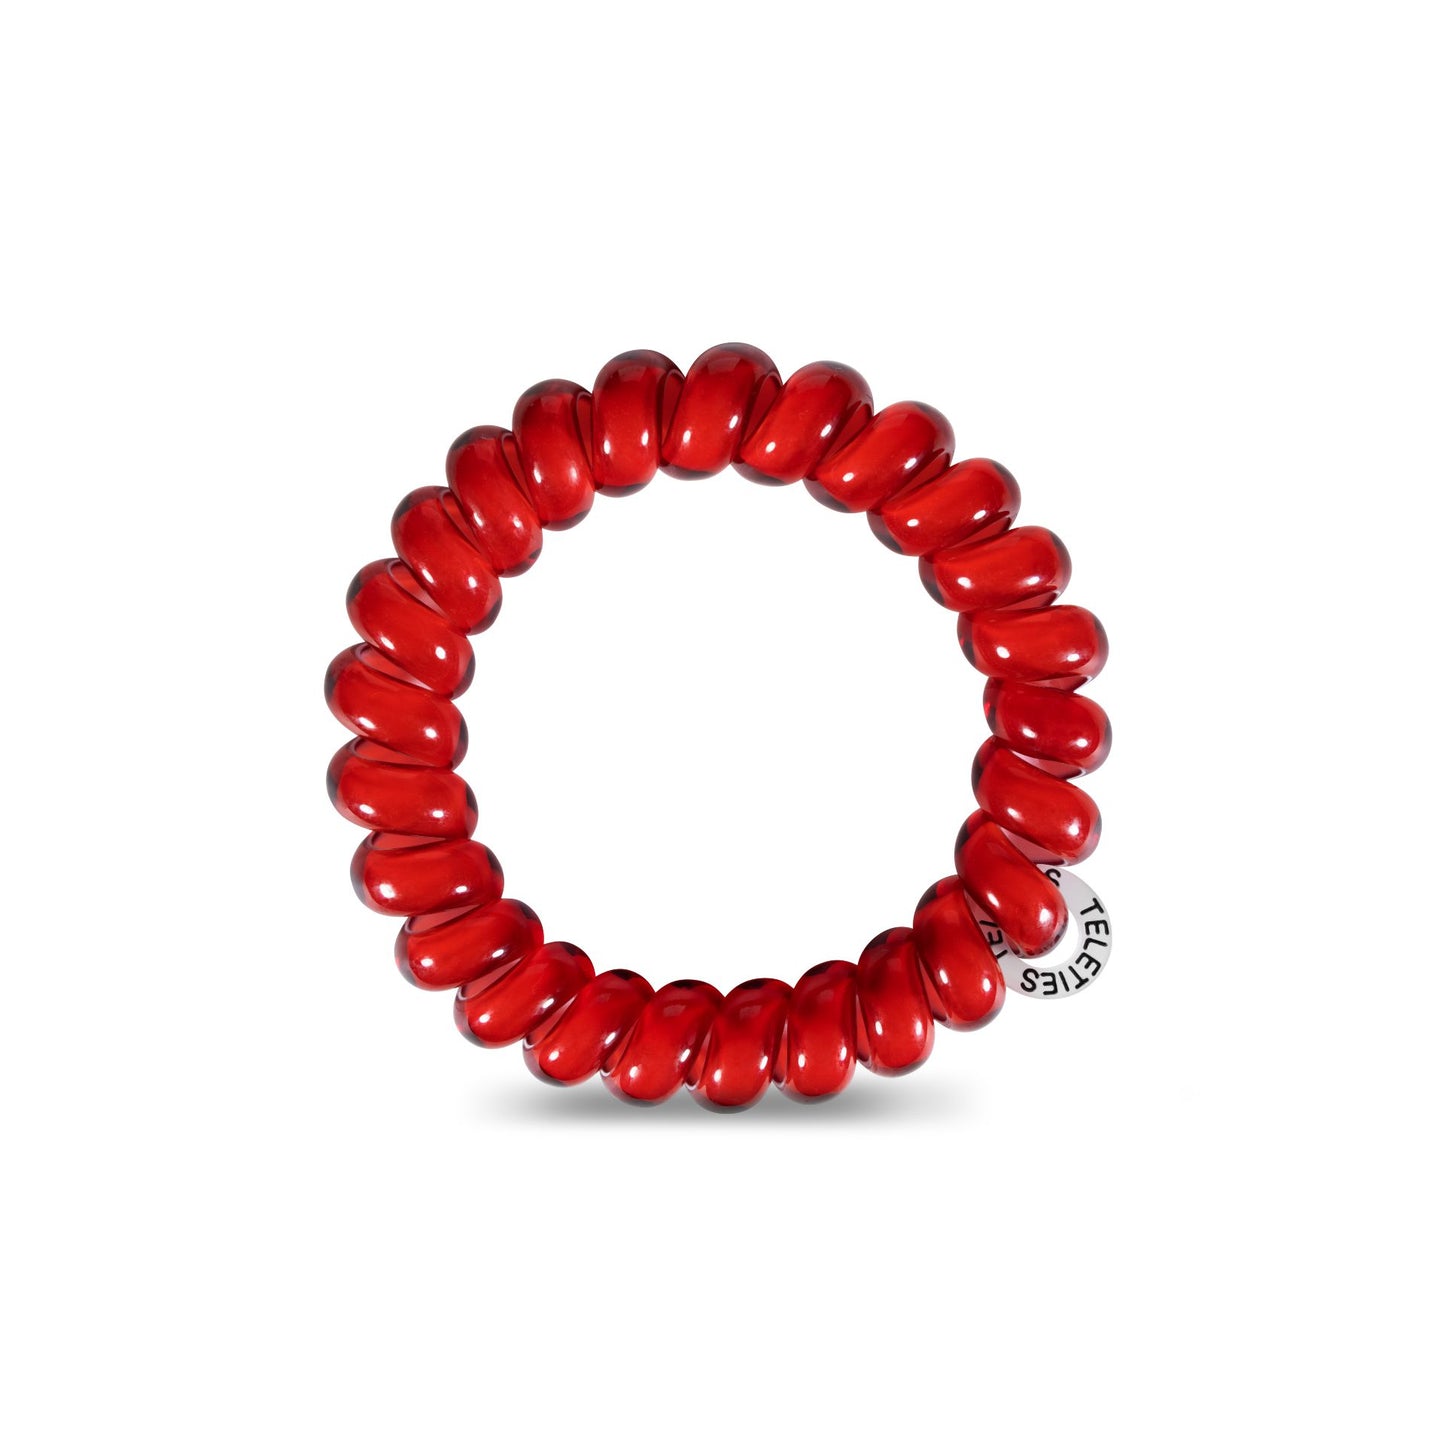 Scarlet Red Teleties-Apparel & Accessories > Clothing Accessories > Hair Accessories-Quinn's Mercantile